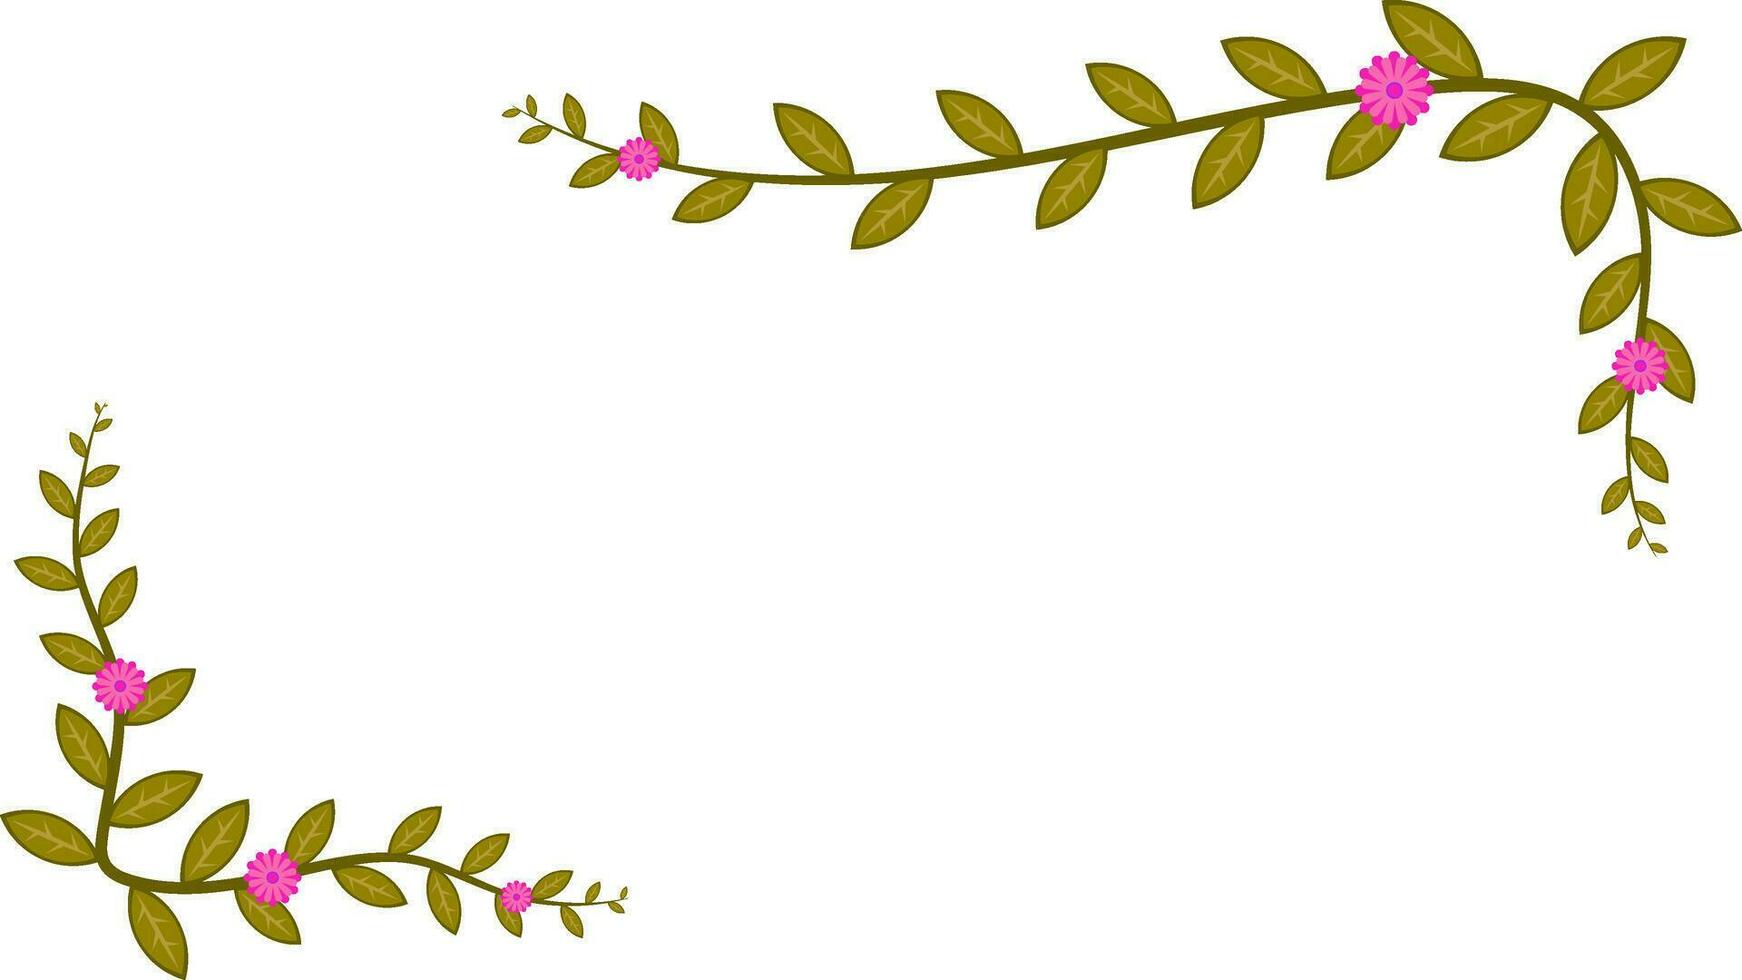 bakgrund och ram mönster av guld träd och rosa blommor vektor